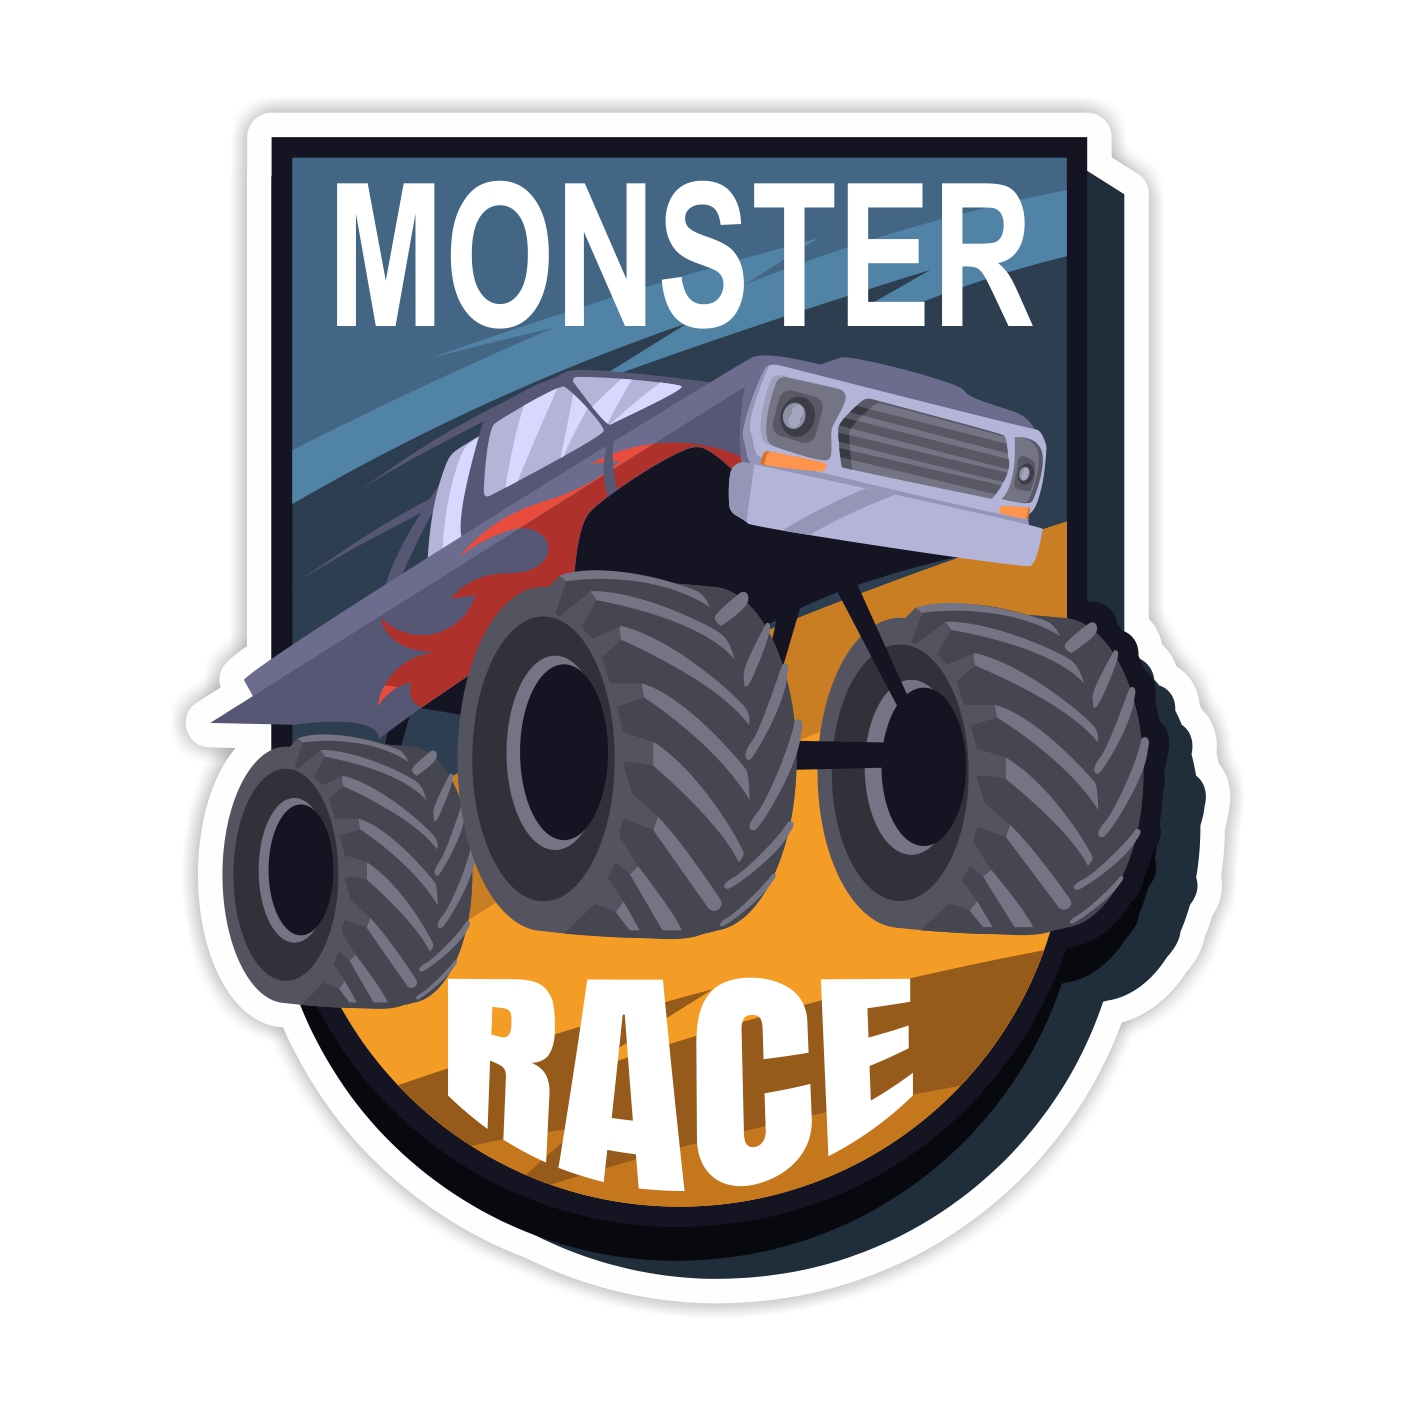 استیکر خودرو طرح Monster Race مدل BSB-00114